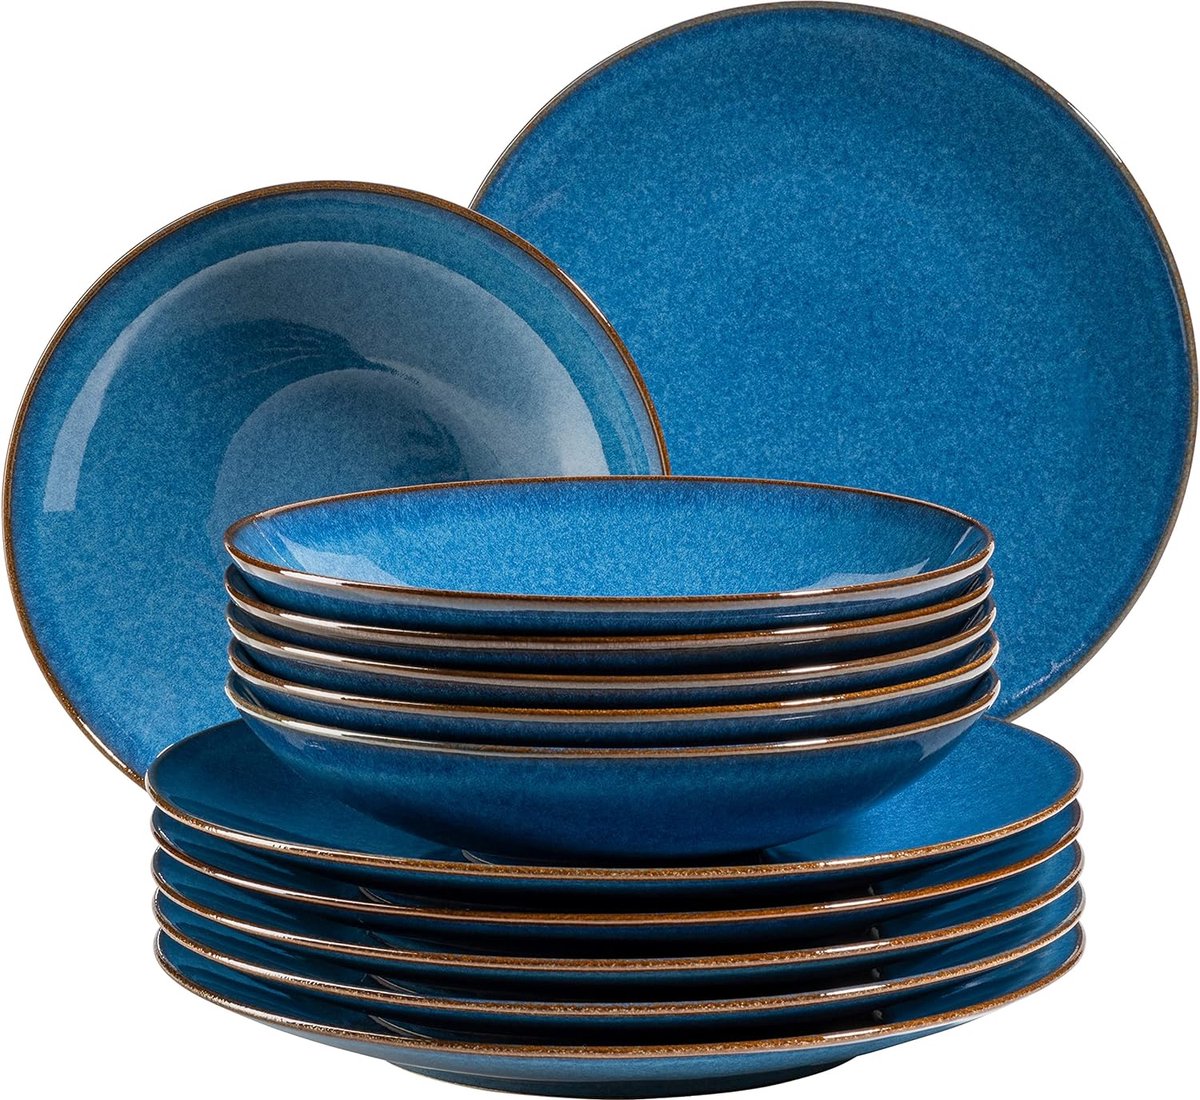 MÄSER 931946 Serie Ossia bordenset voor 6 personen in mediterrane vintage-look, 12-delig modern tafelservies met soepborden en platte borden, koningsblauw, aardewerk